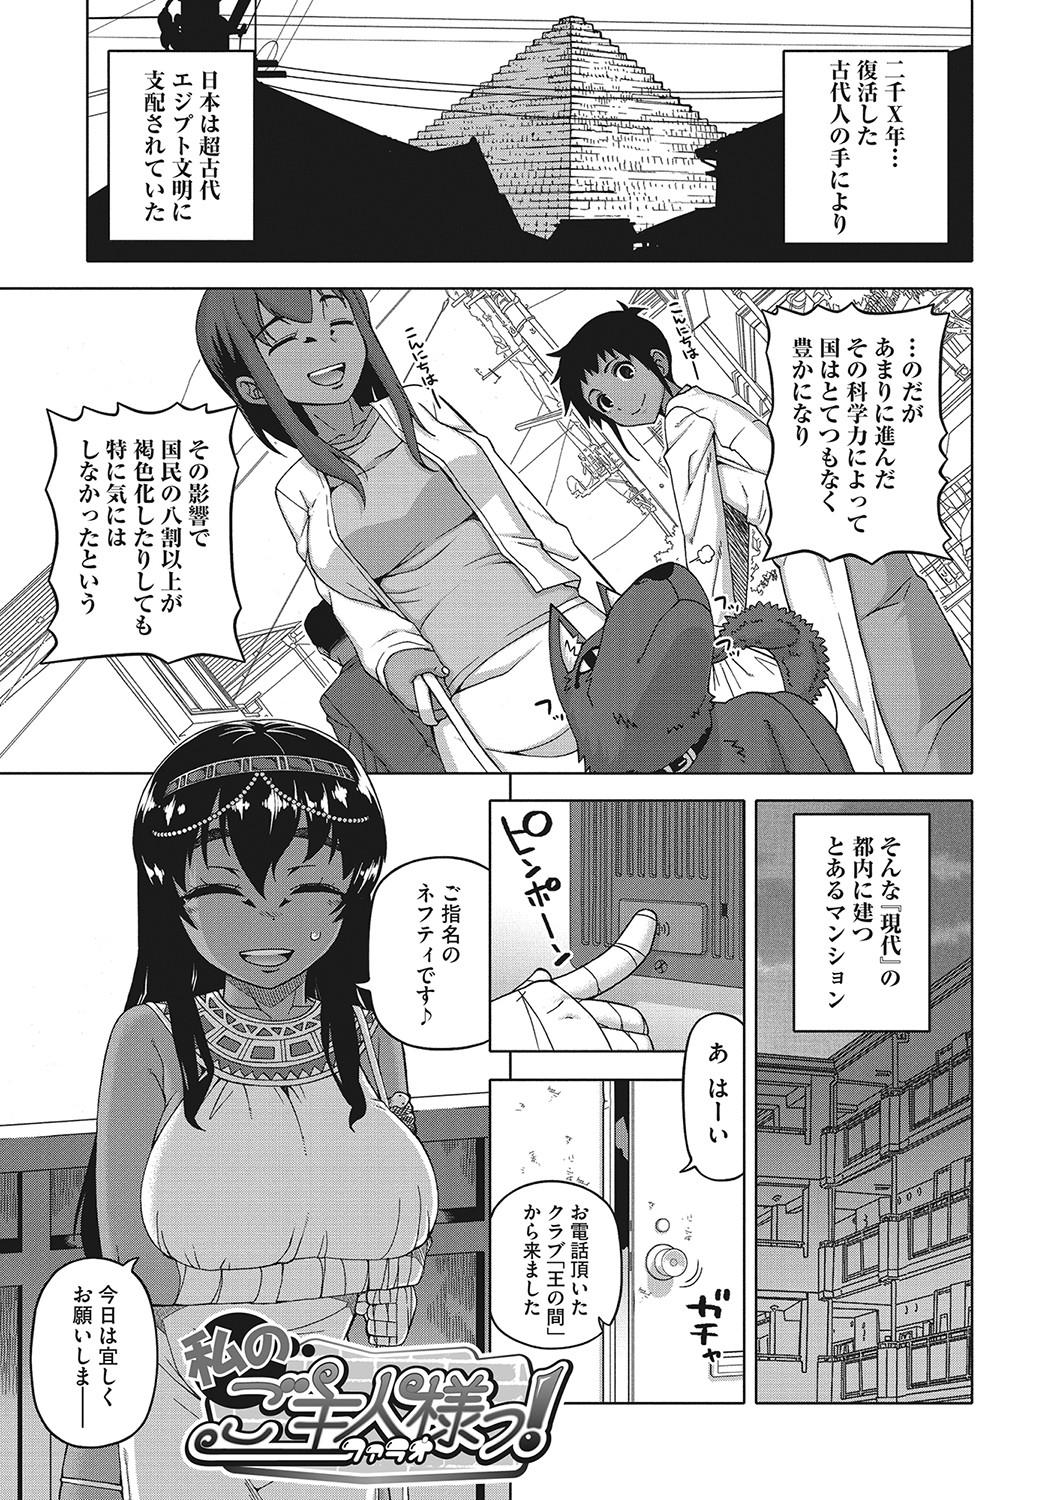 Young Tits Watashi no Pharaoh-sama! Free 18 Year Old Porn - Page 4